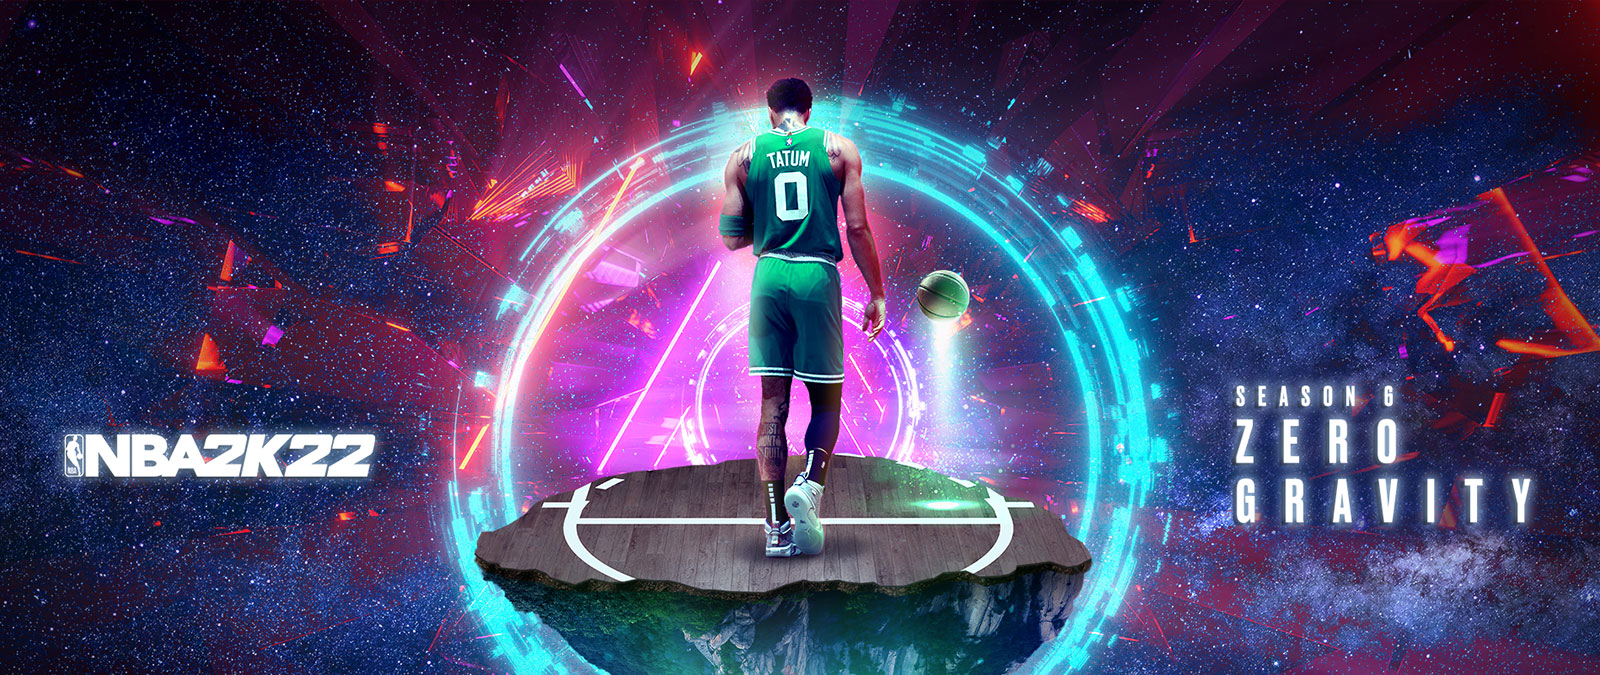 NBA 2K22, Stagione 6 Zero Gravity, Tatum in piedi su un pezzetto di campo da basket galleggiante nello spazio con anelli di energia che lo circondano.